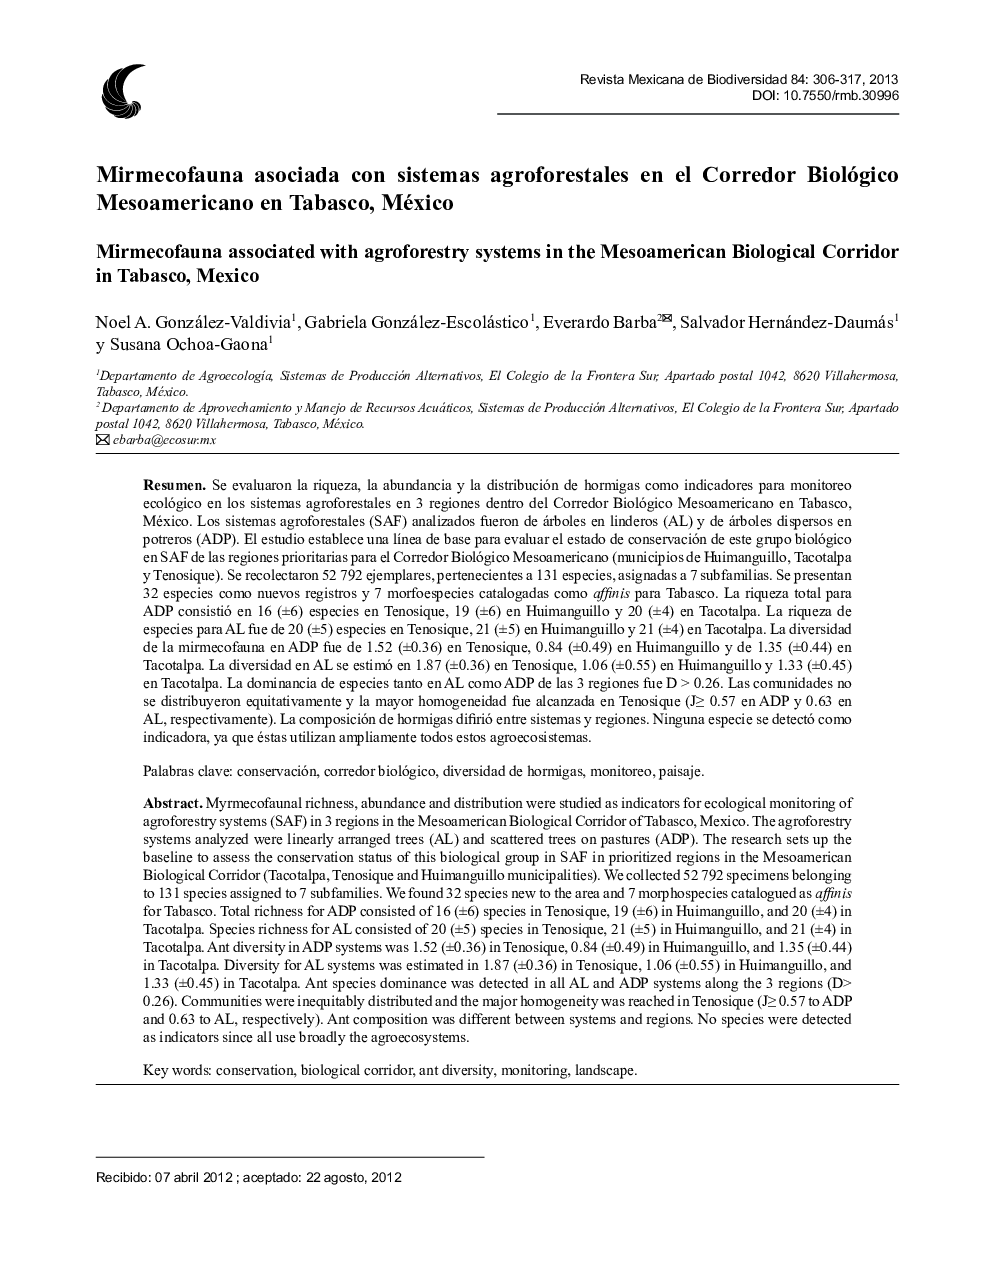 Mirmecofauna asociada con sistemas agroforestales en el Corredor Biológico Mesoamericano en Tabasco, México